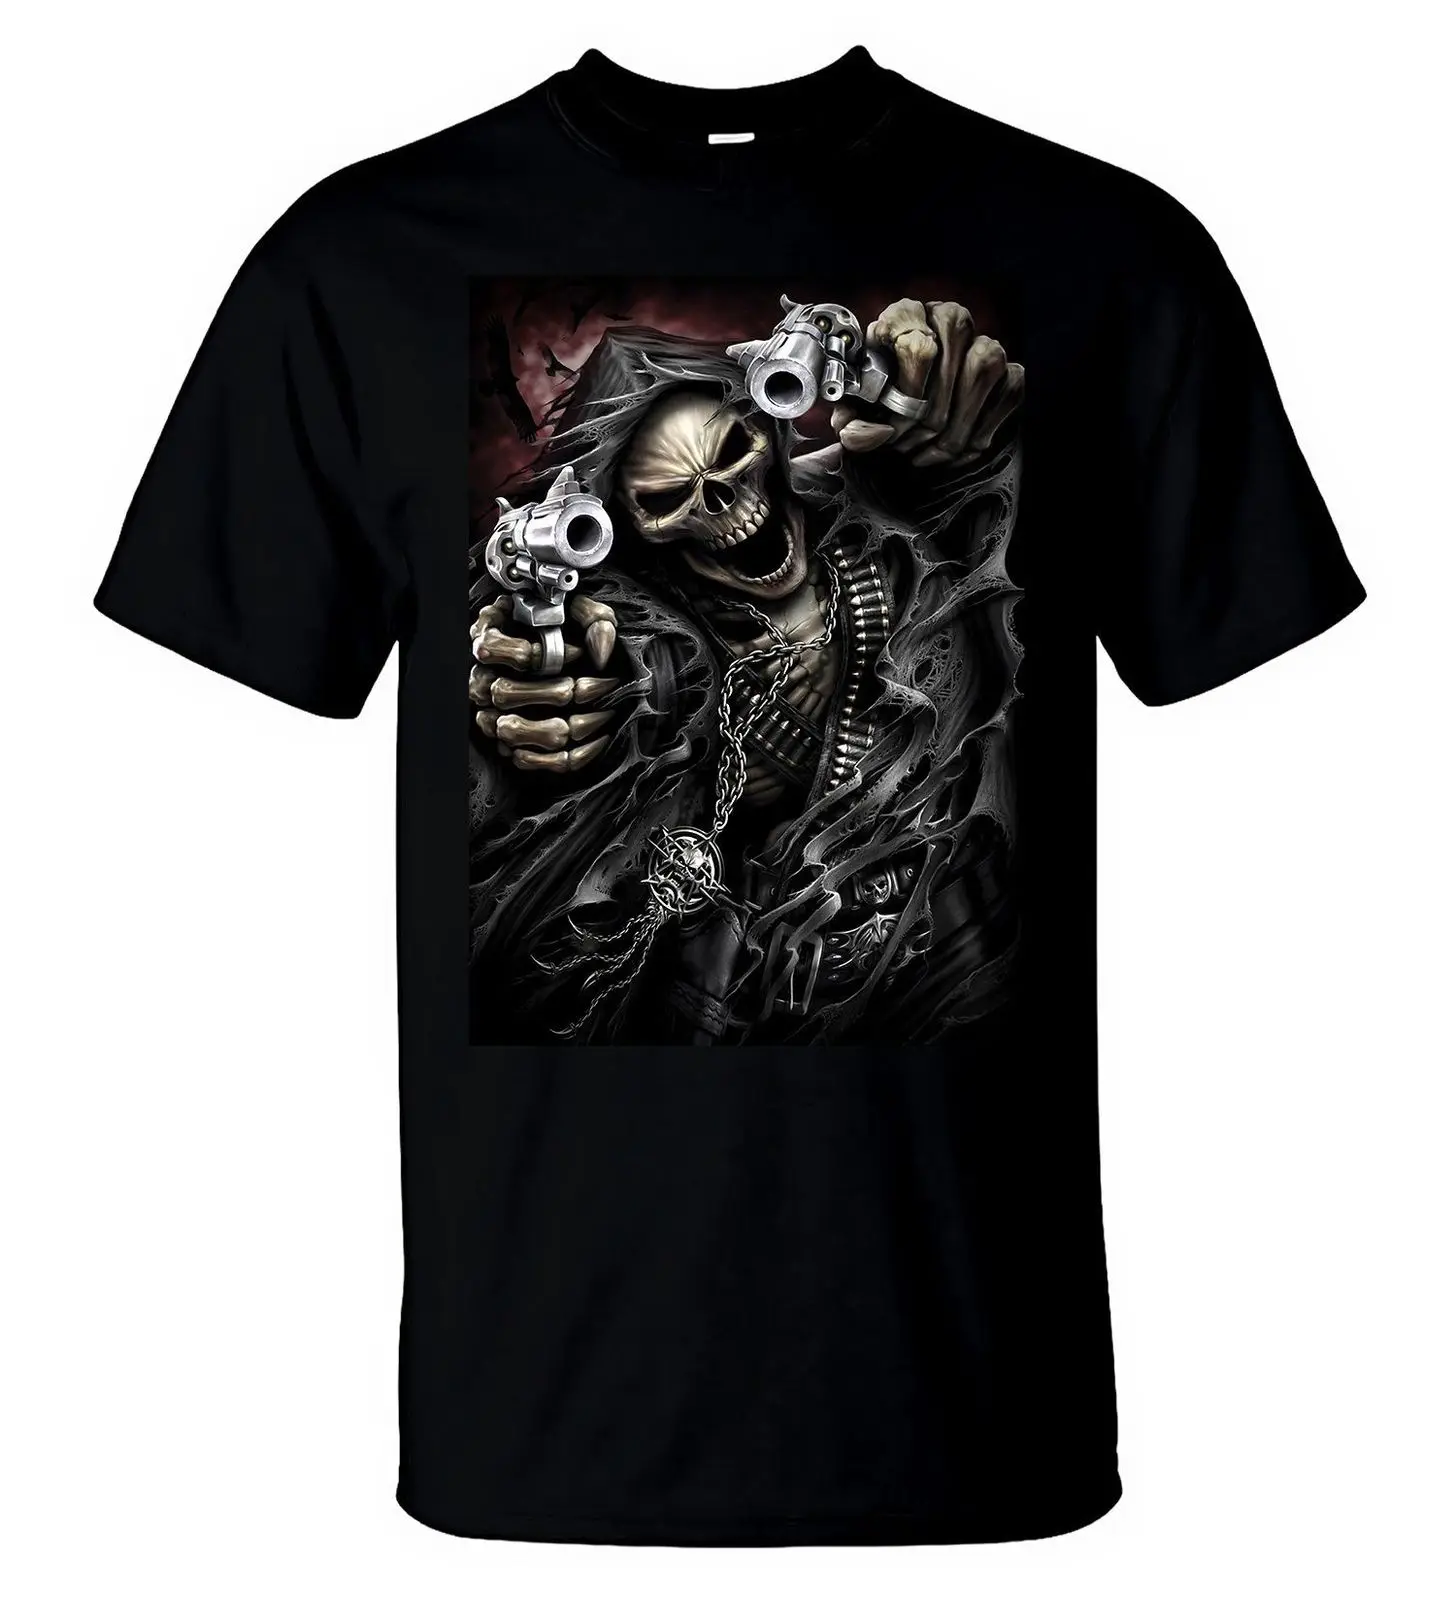 Five Finger Death Punch футболка американский хэви-метал, рок футболка мужская черная футболка новая 2018 Горячая Летняя Повседневная футболка с